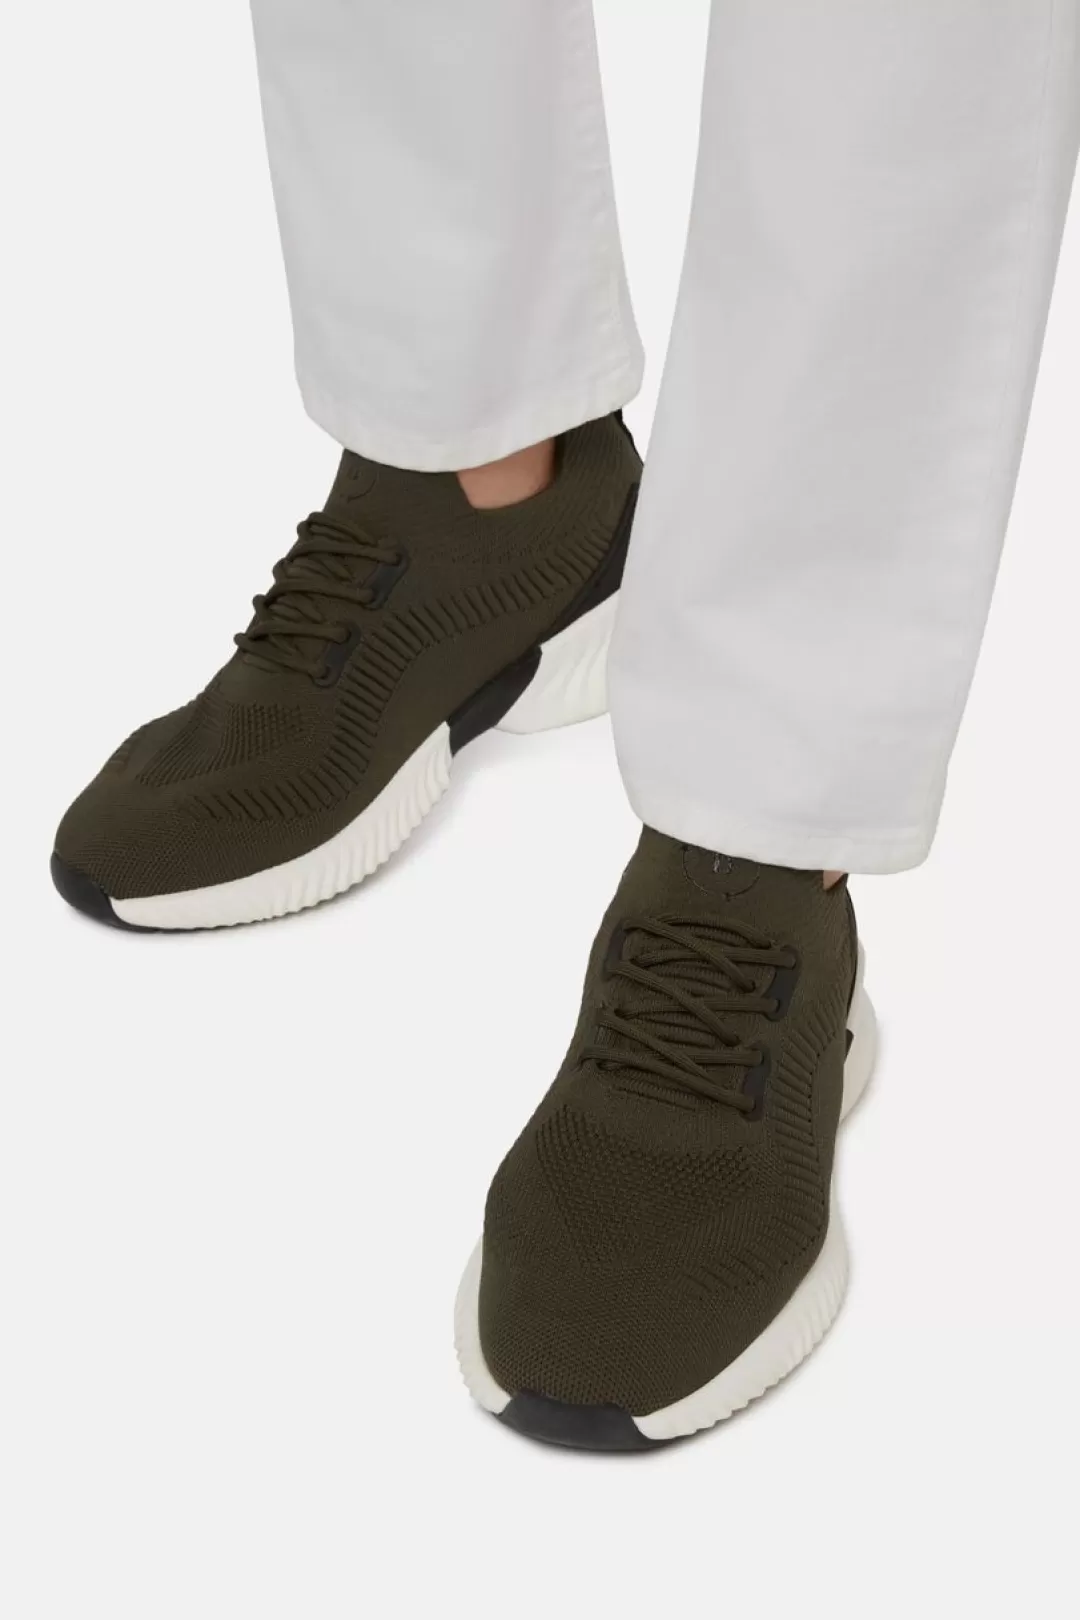 Boggi Sneakers Willow Verdi In Filato Riciclato Militare Fashion